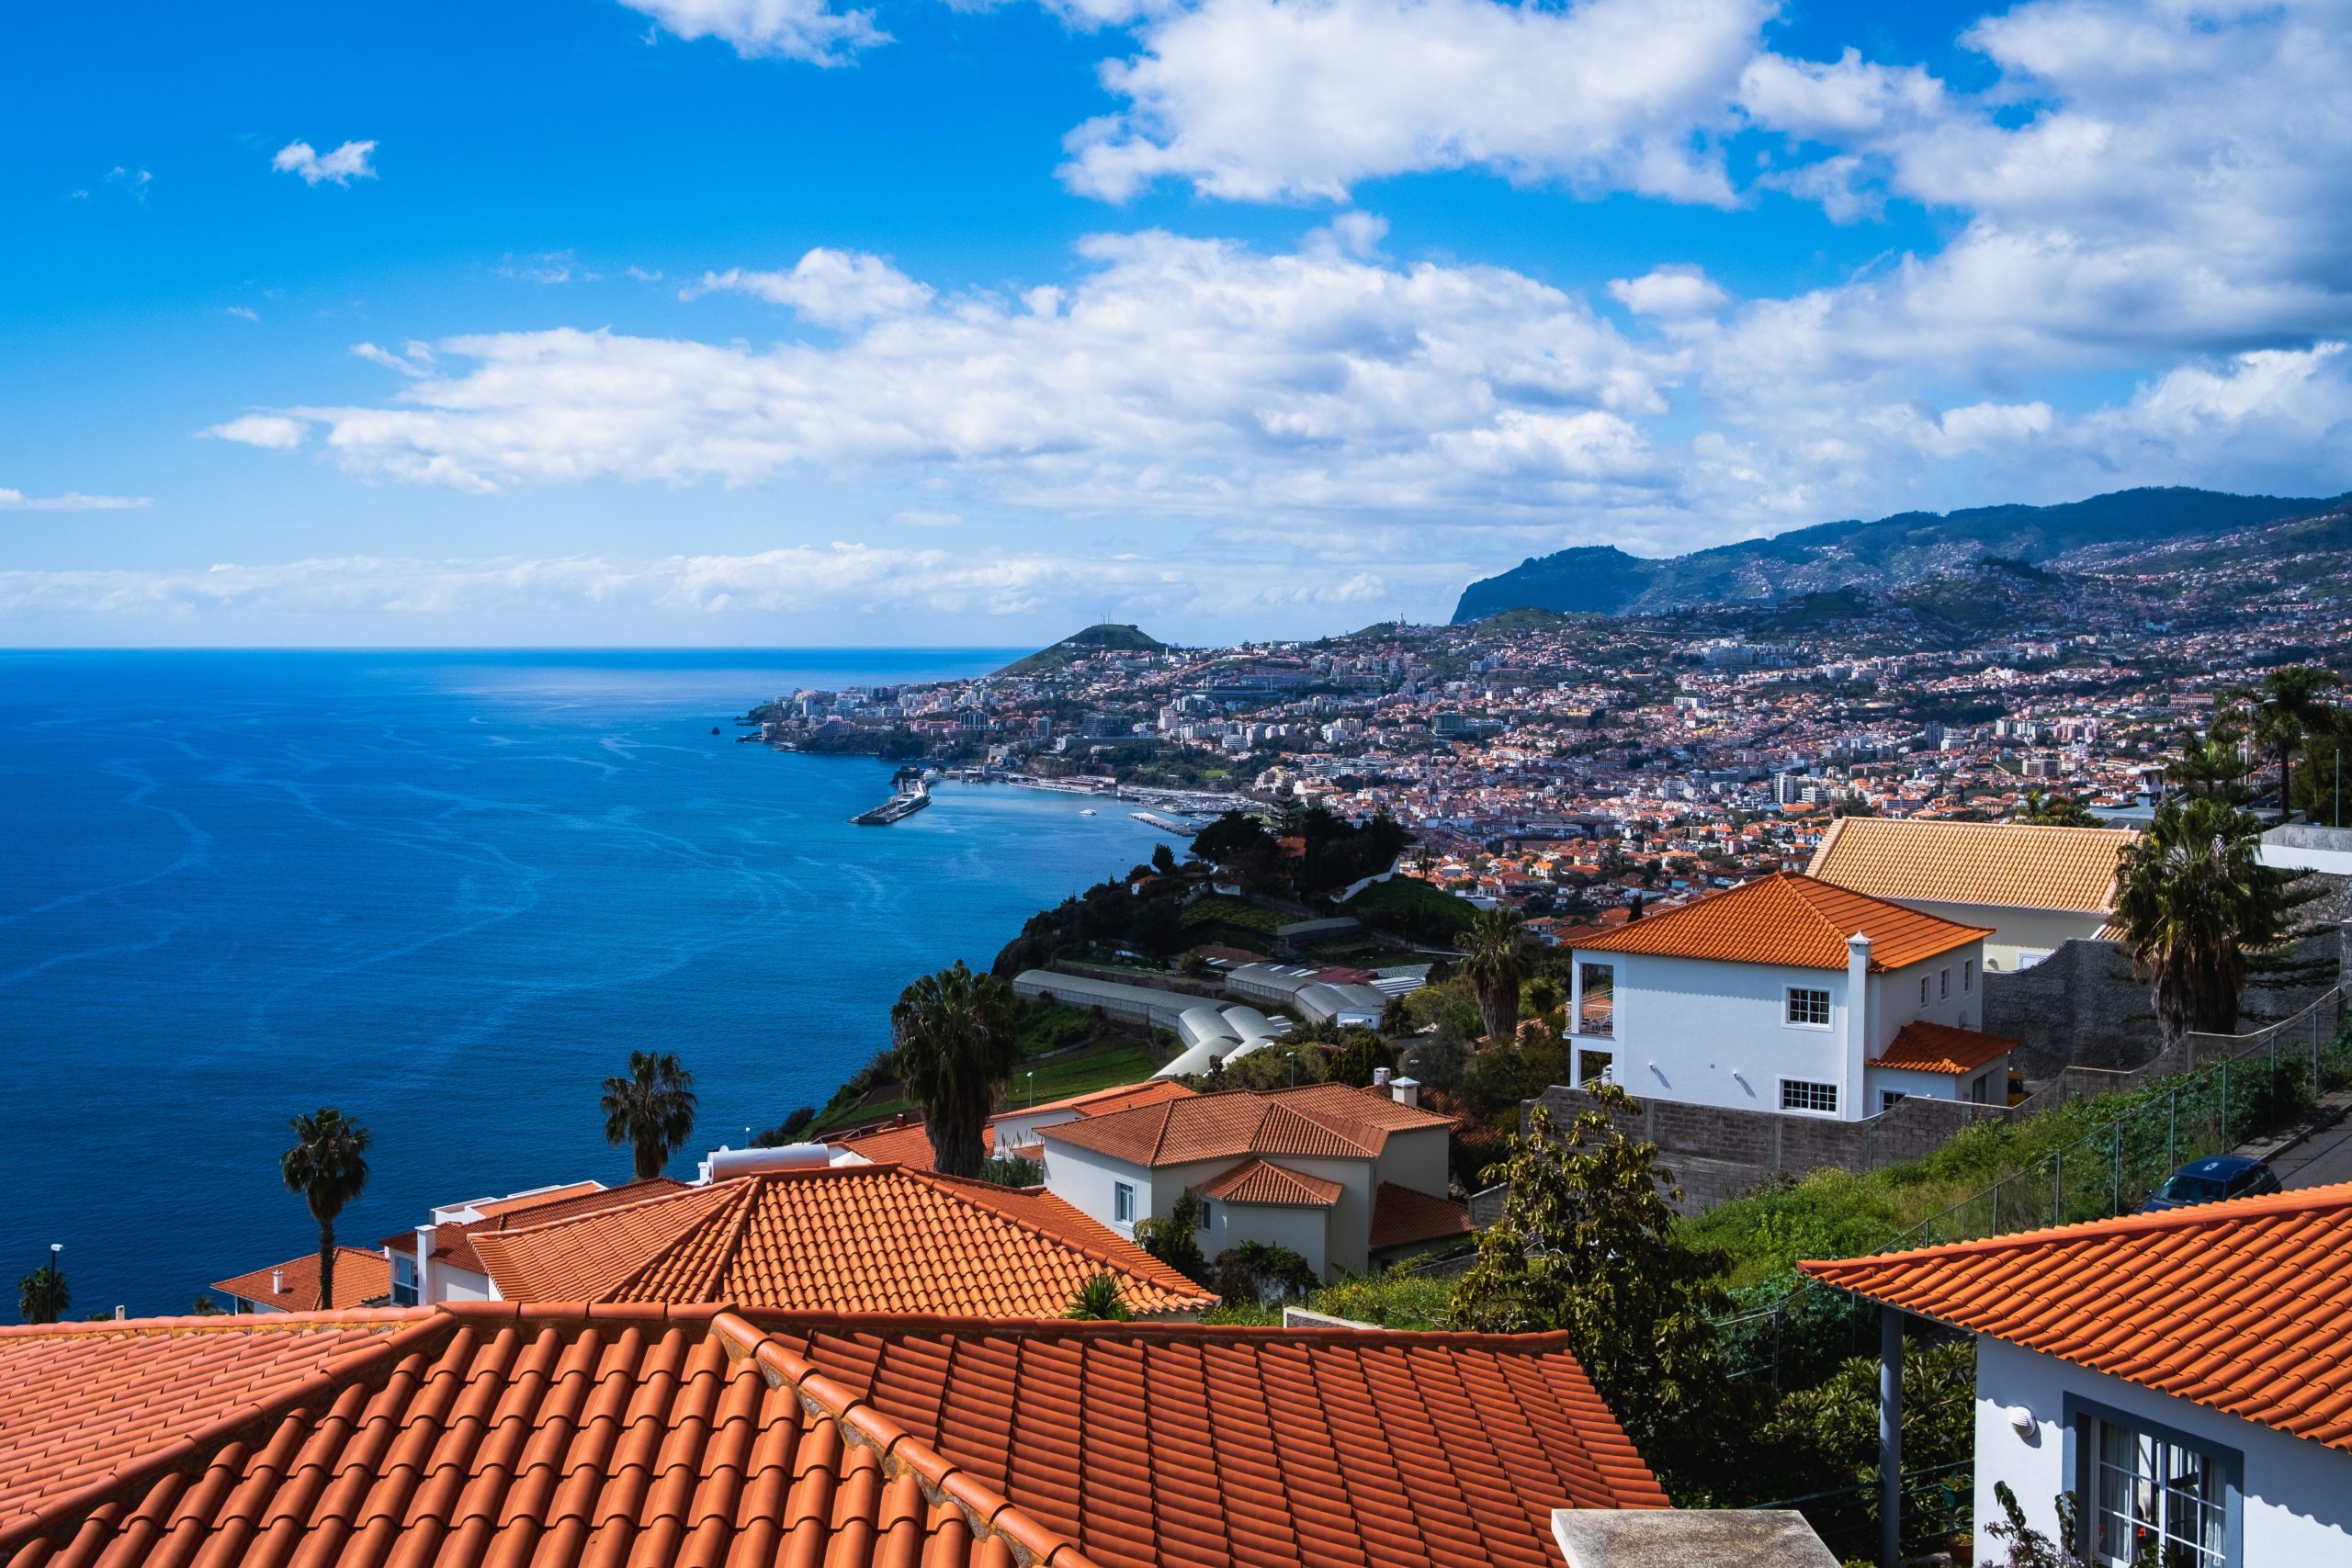 Explore Madeira island